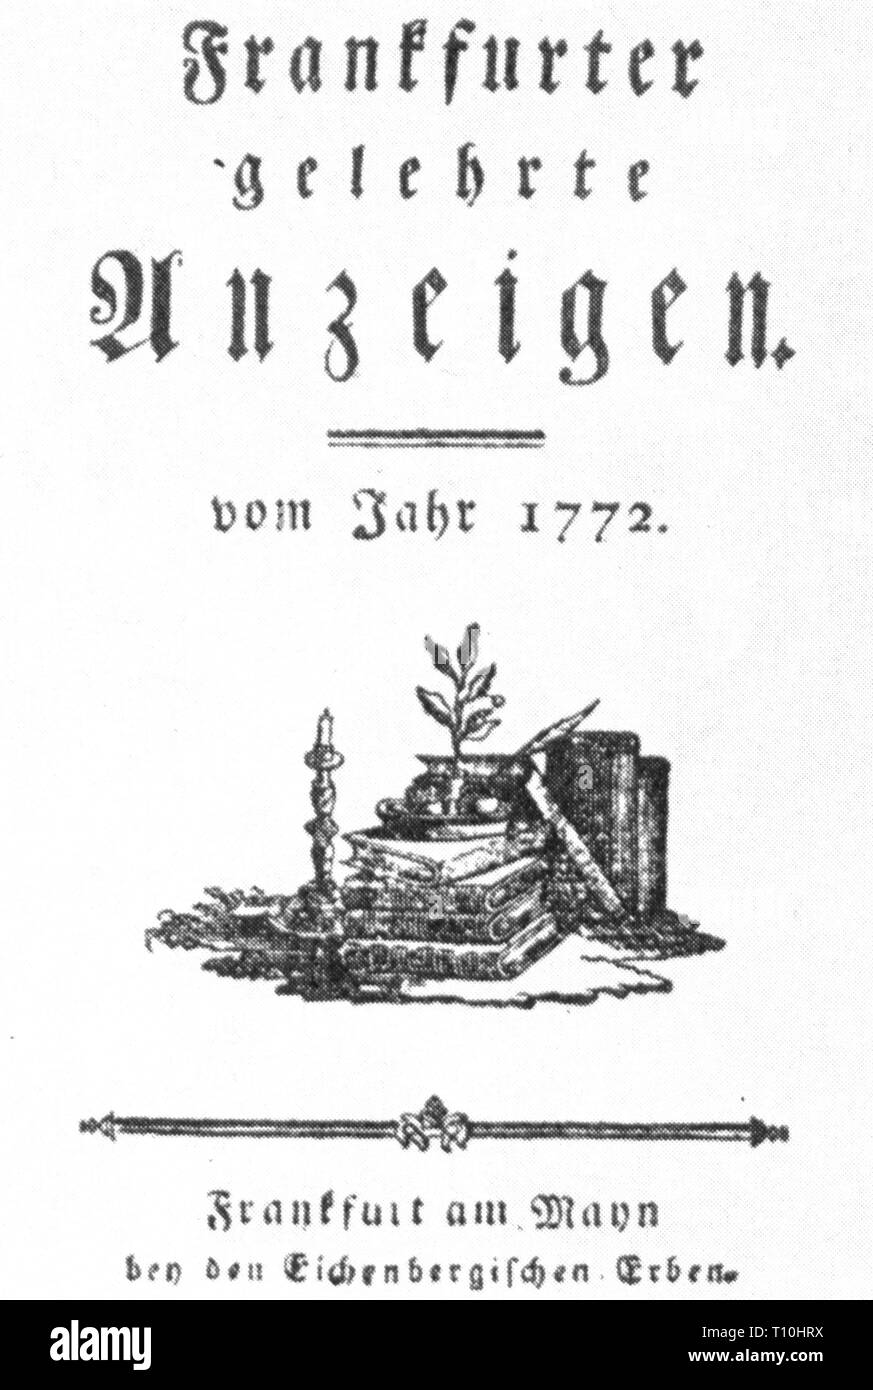 Presse/Medien, Zeitschriften, "Frankfurter gelehrte Anzeigen", Titelseite, Frankfurt, 1772, Artist's Urheberrecht nicht gelöscht werden Stockfoto